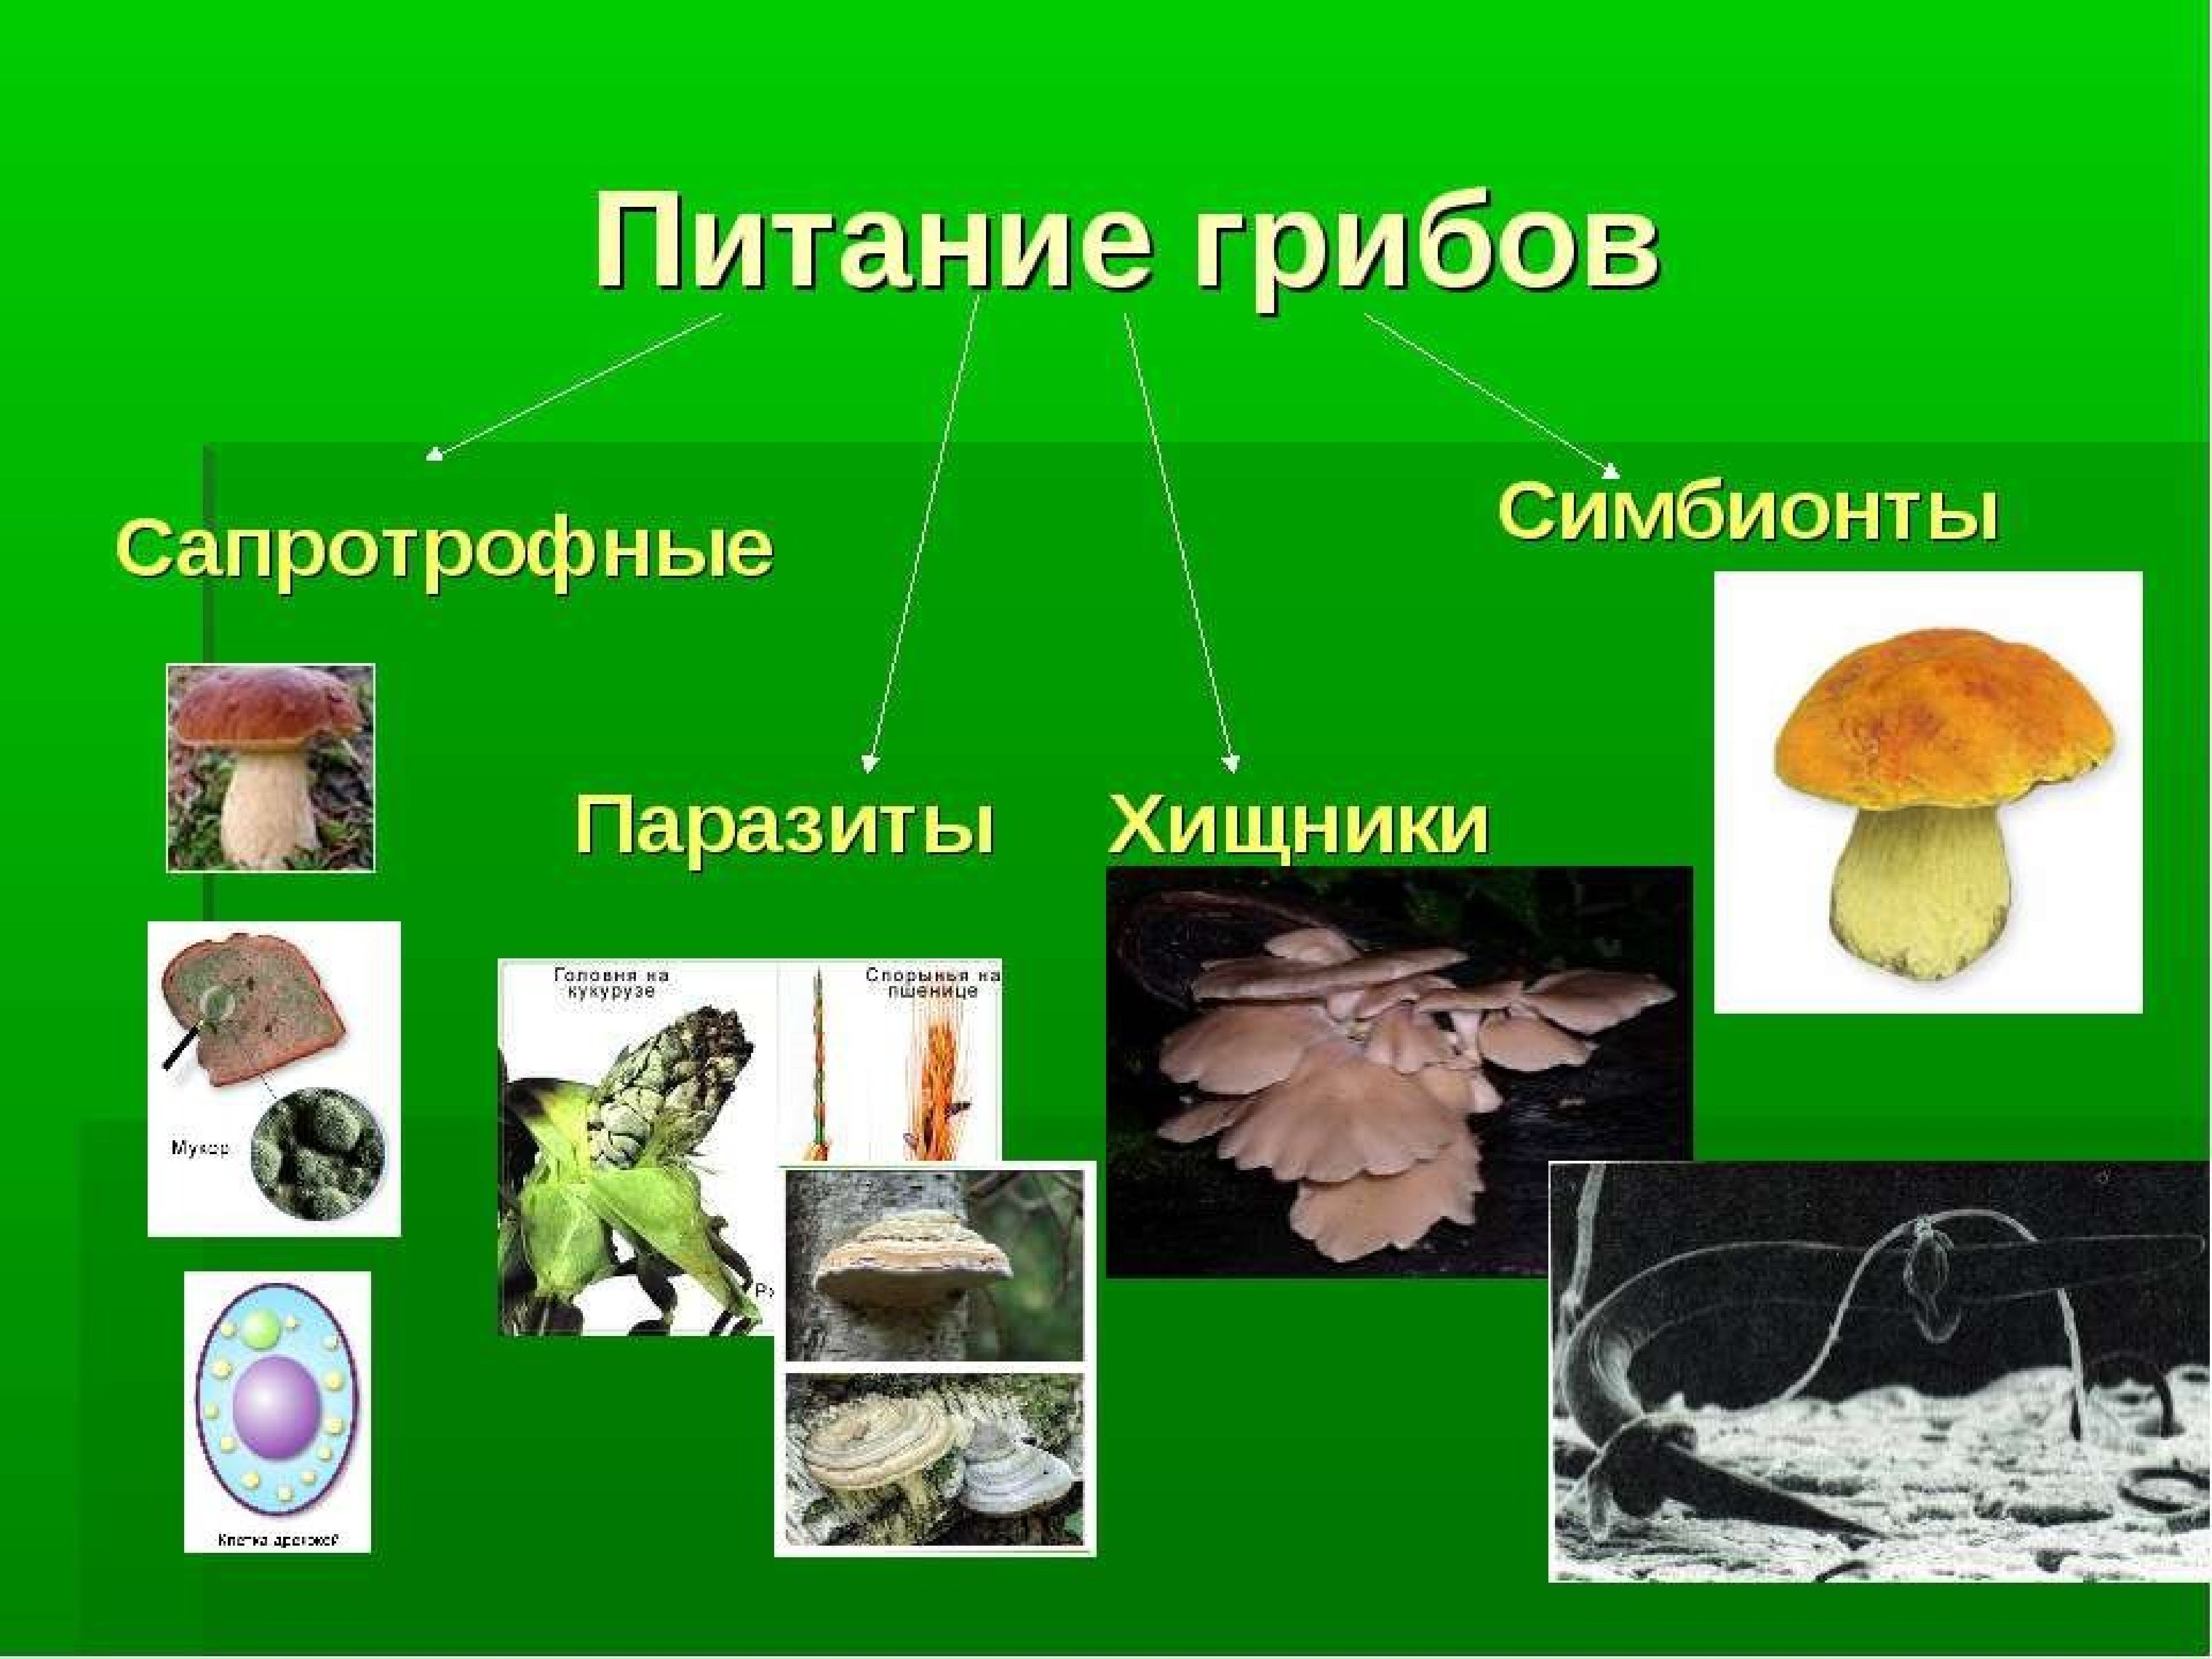 Какой тип питания характерен для шампиньона. Типы питания грибов сапротрофы паразиты симбионты и хищники. Типы питания грибов 5 класс биология. Схема питания грибов 6 класс. Питание грибов 5 класс.